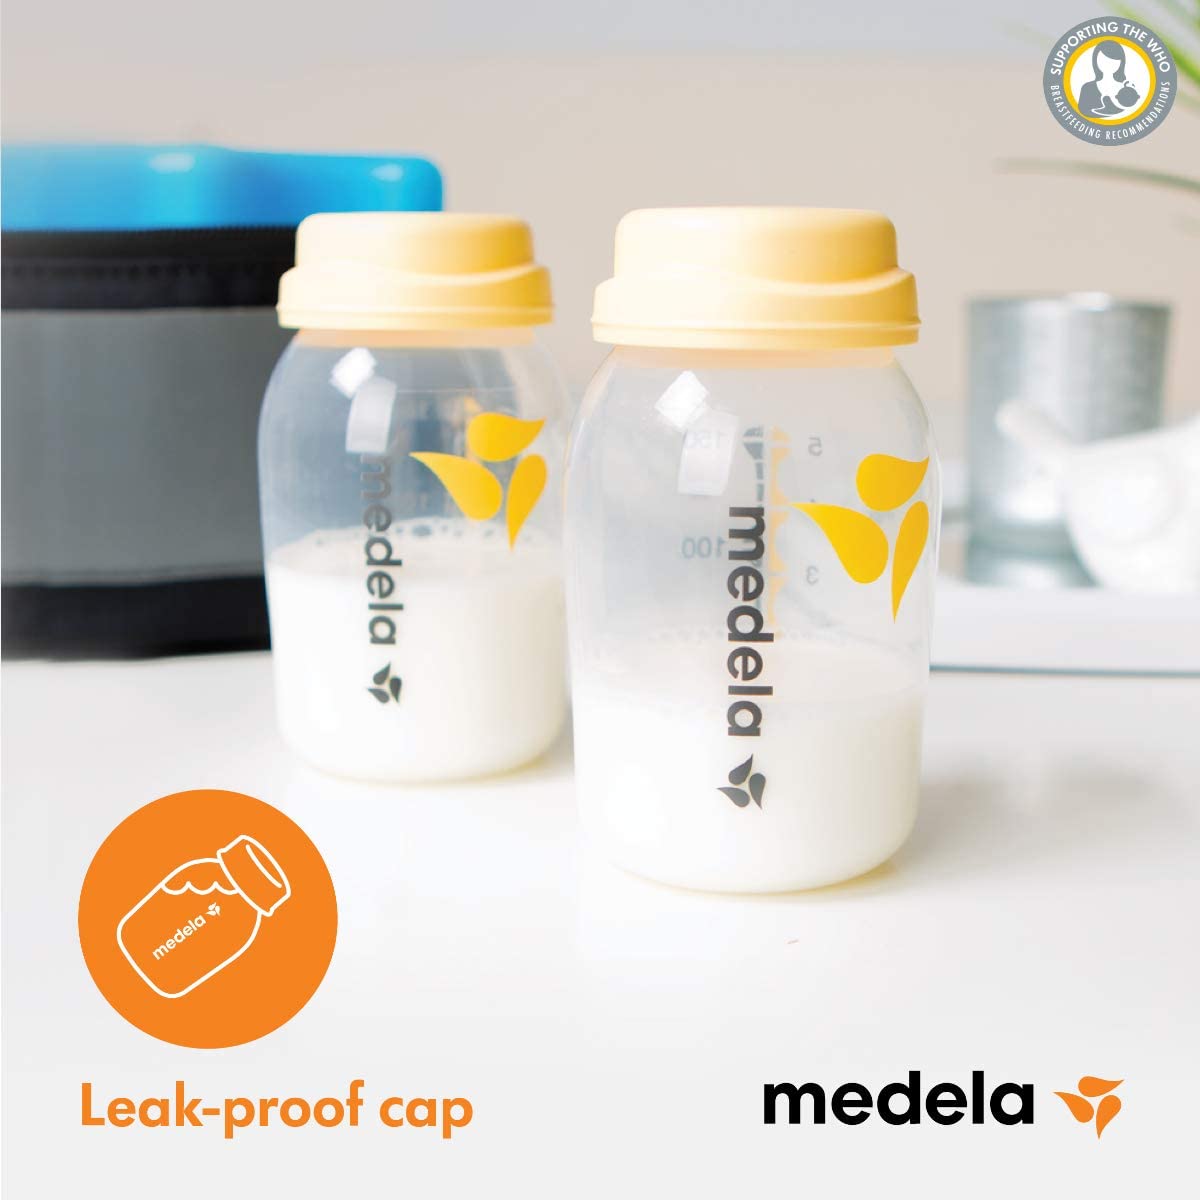 Medela - Breast Milk Bottles - 150ml 3pcs